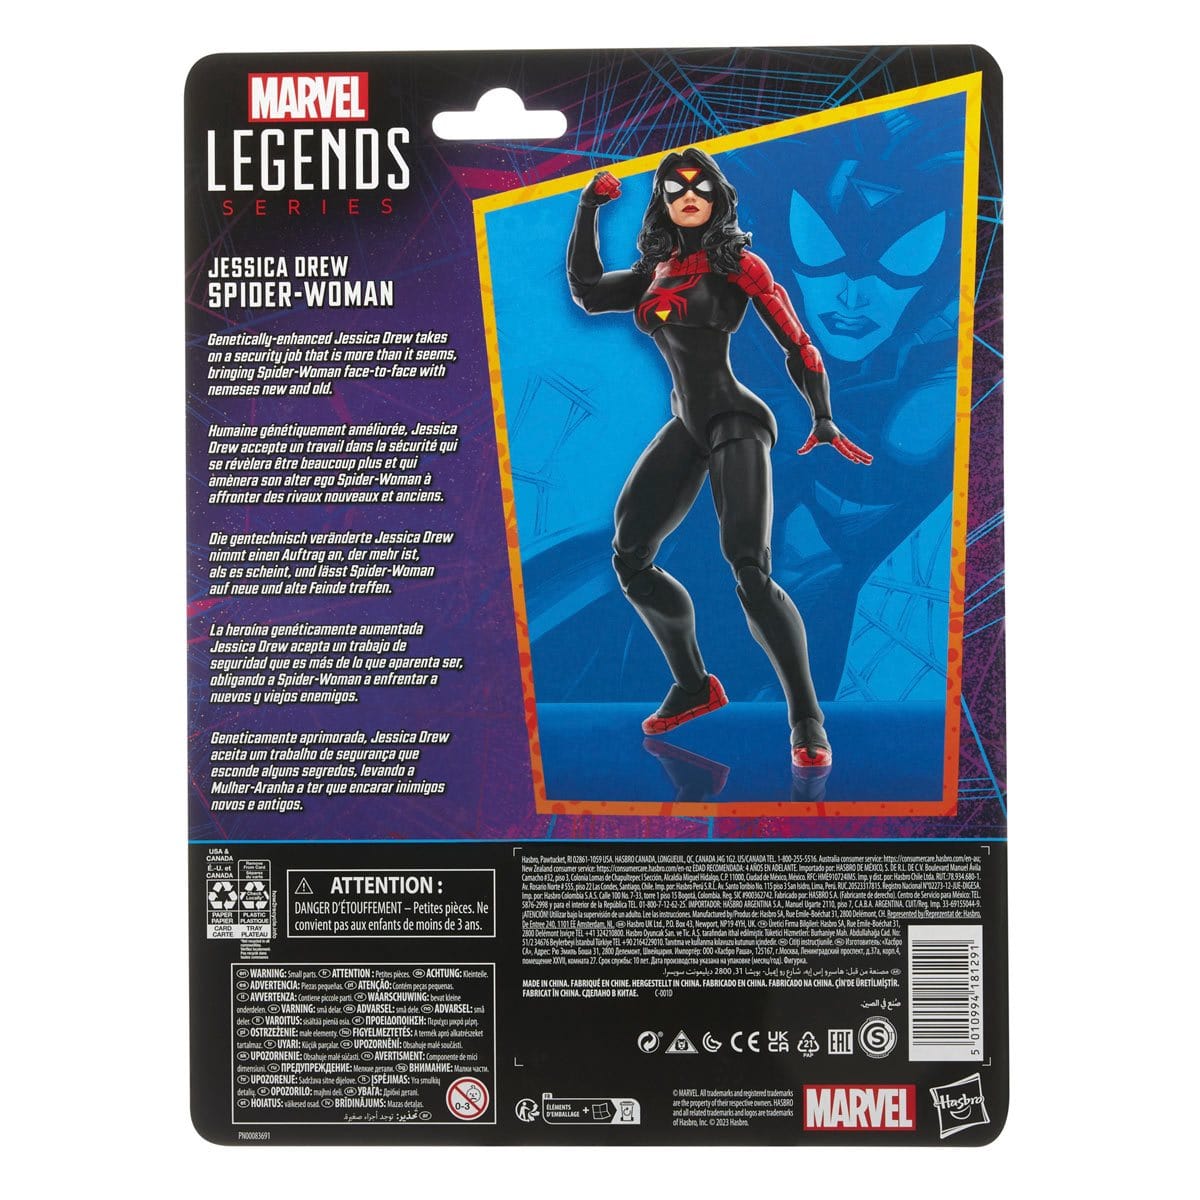 Spider-Man Retro Marvel Legends Jessica Drew Spider-Woman 6-Inch Action Figure Artwork box